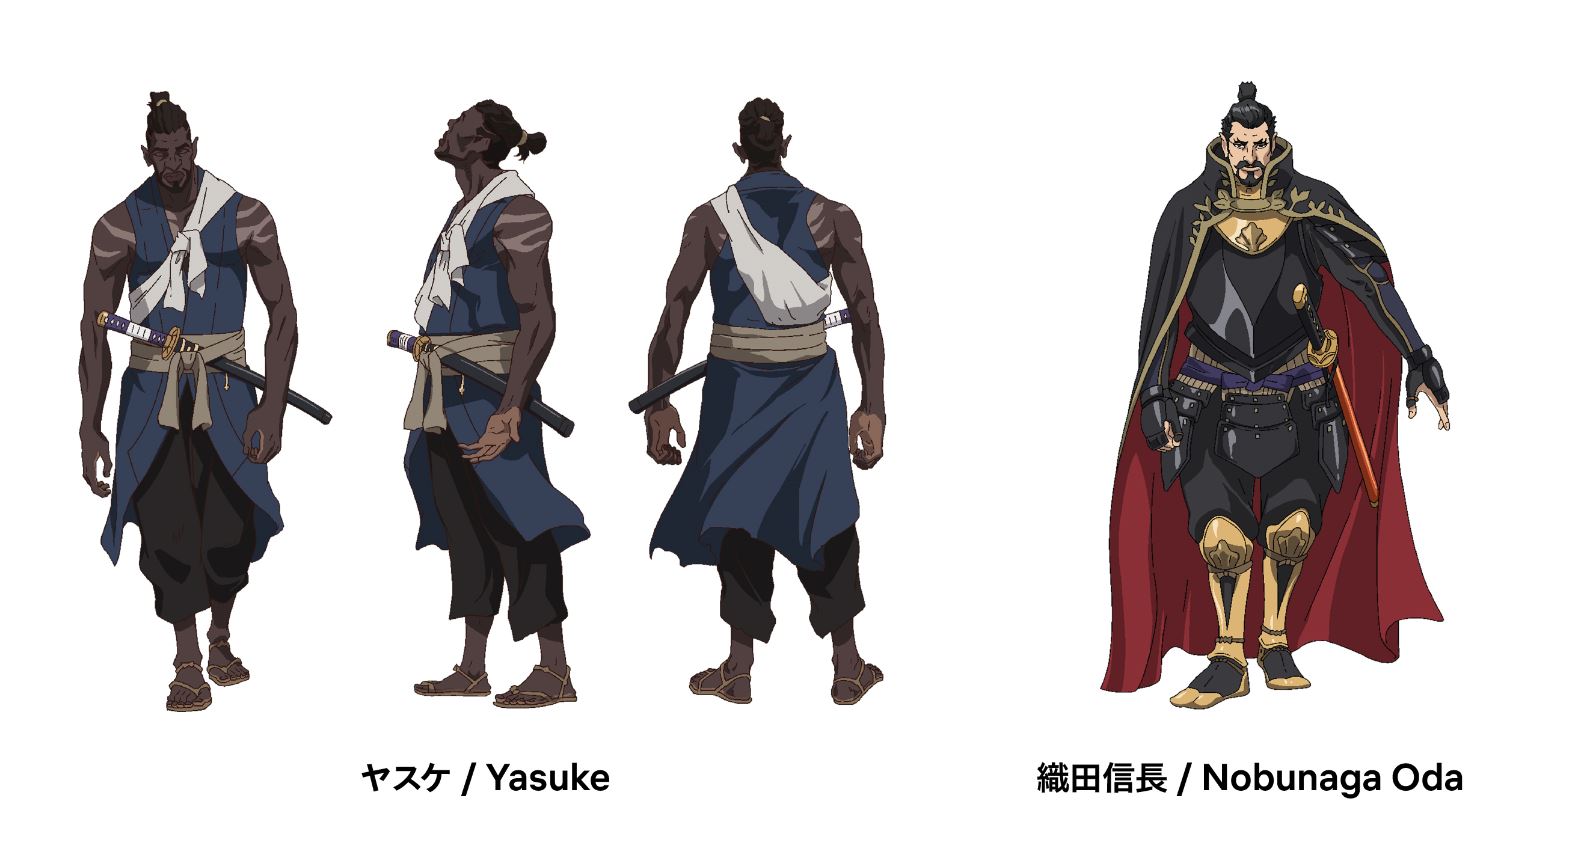 Yasuke: Character arts - Netflix Anime